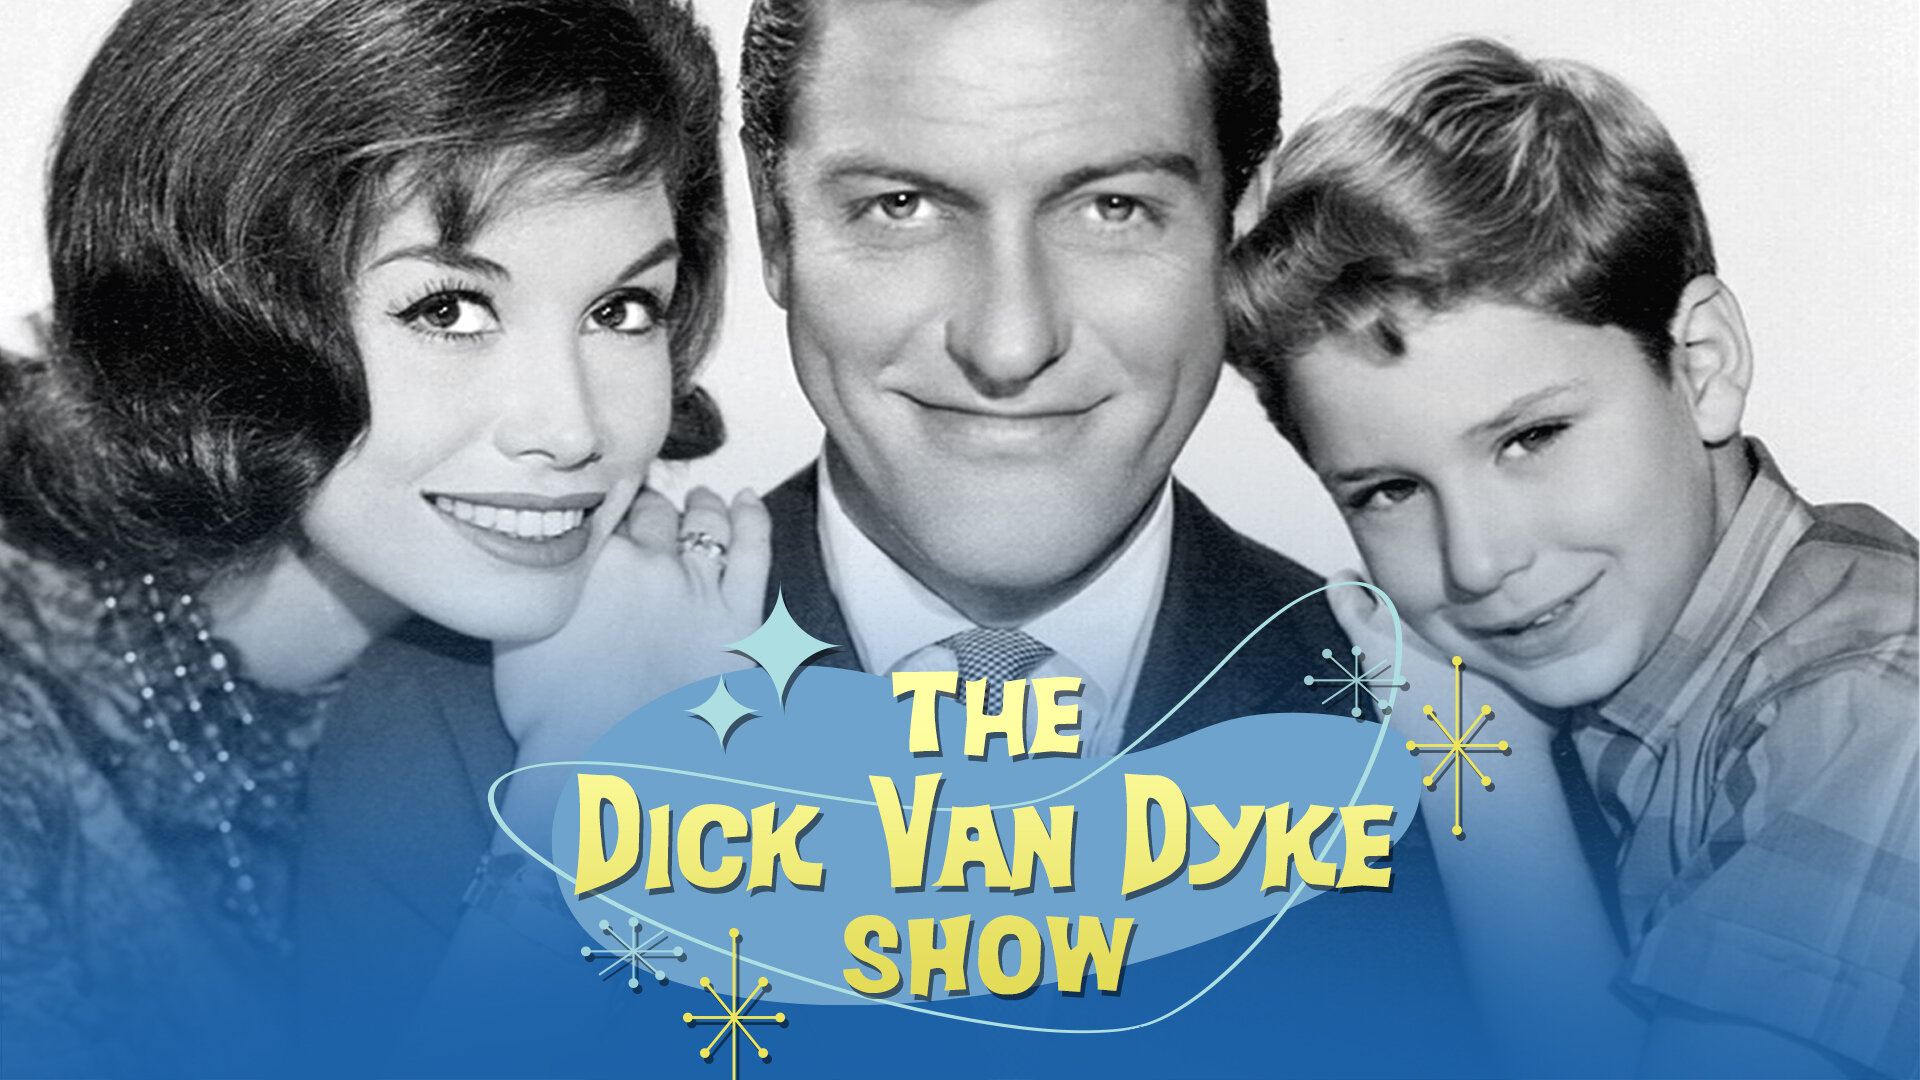 5152 - The Dick Van Dyke Show_1920x1080.jpg